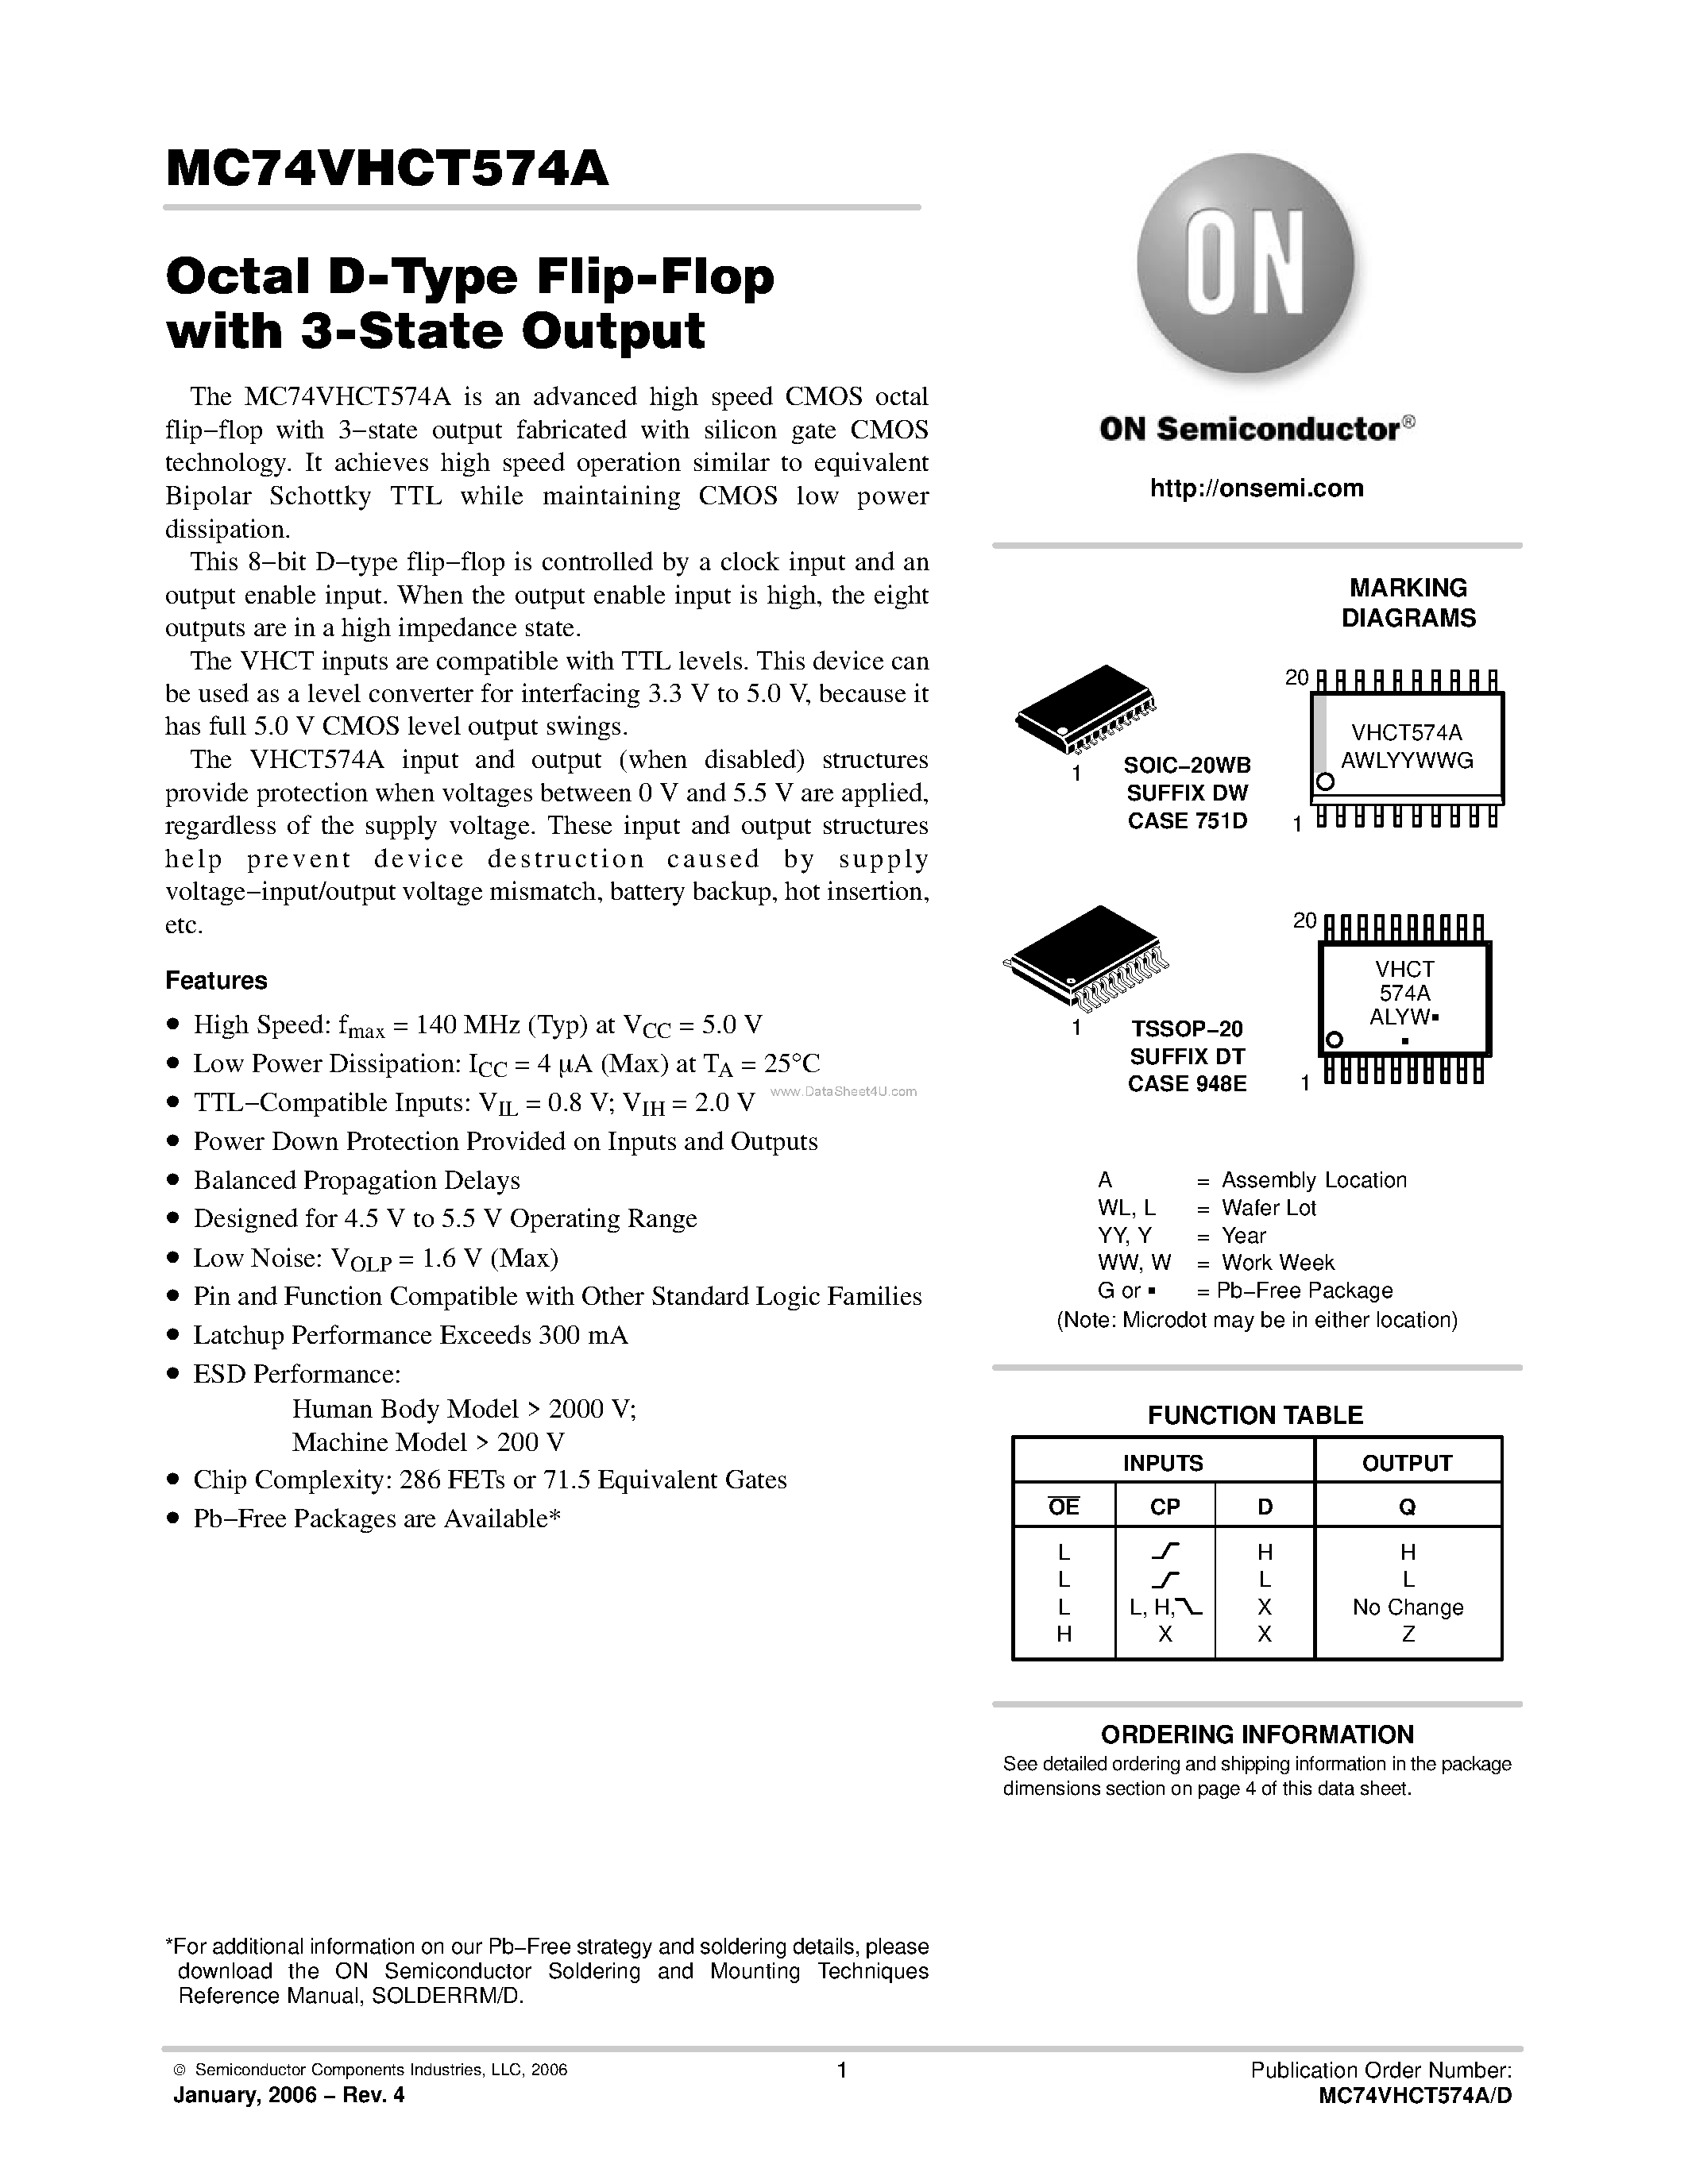 Datasheet MC74VHCT574A - Octal D-Type Flip-Flop page 1